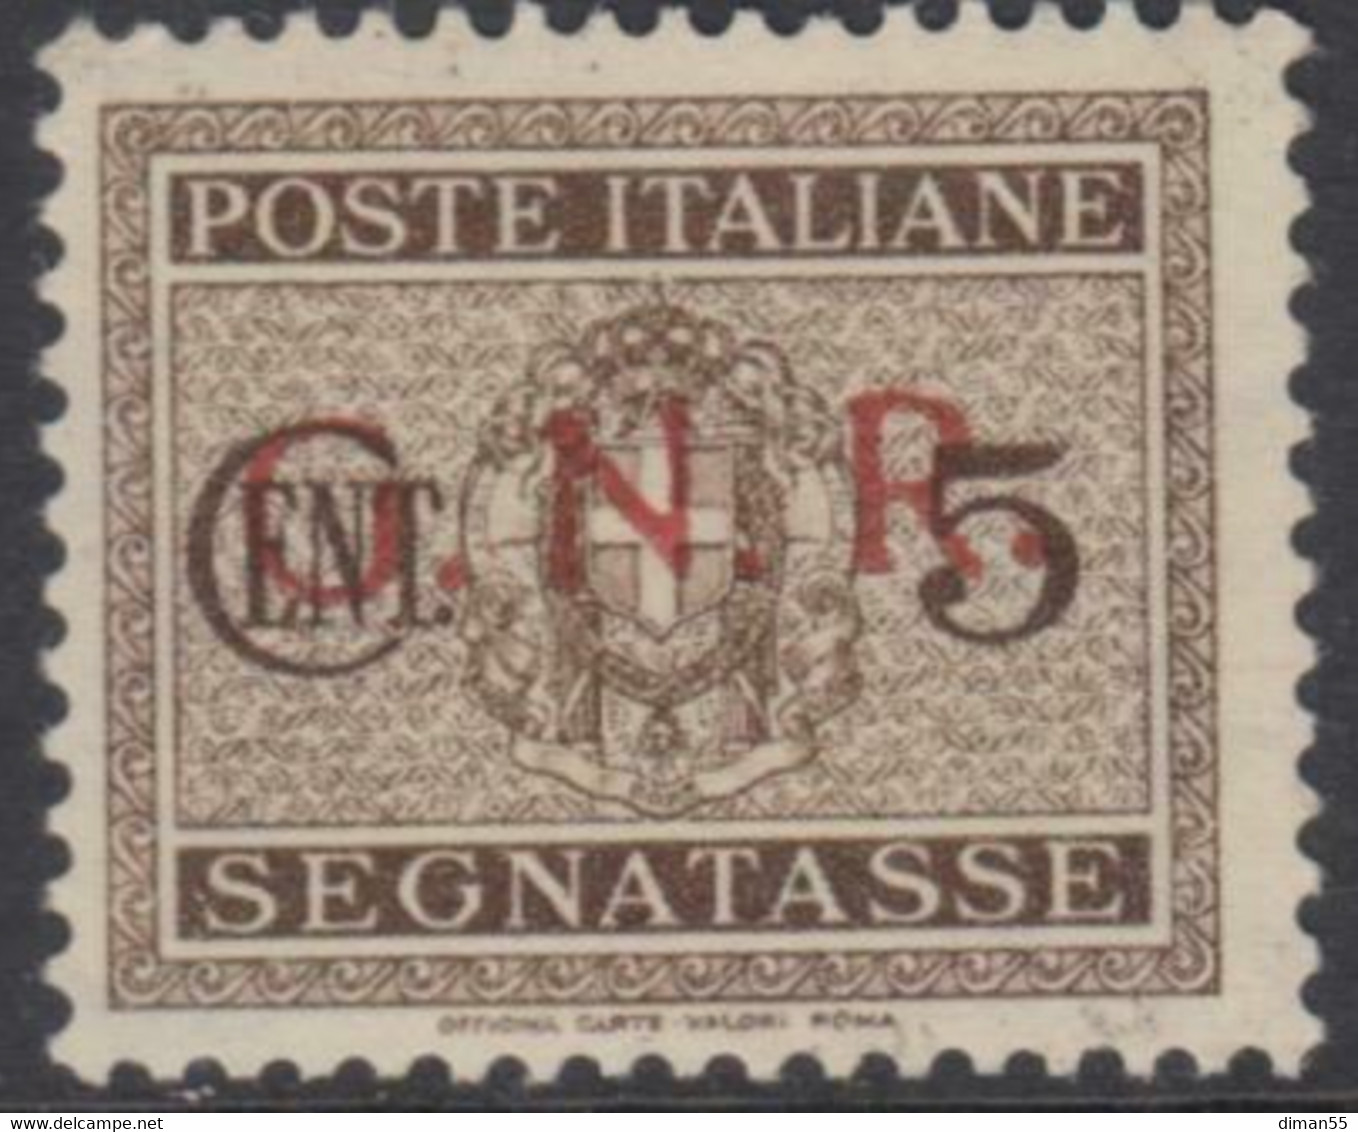 Italy - 1944 R.S.I. - Tax N.47A - Cat. 1500 Euro - Varietà Errore Di Colore Soprastampa - Gomma Integra - MNH** - Taxe